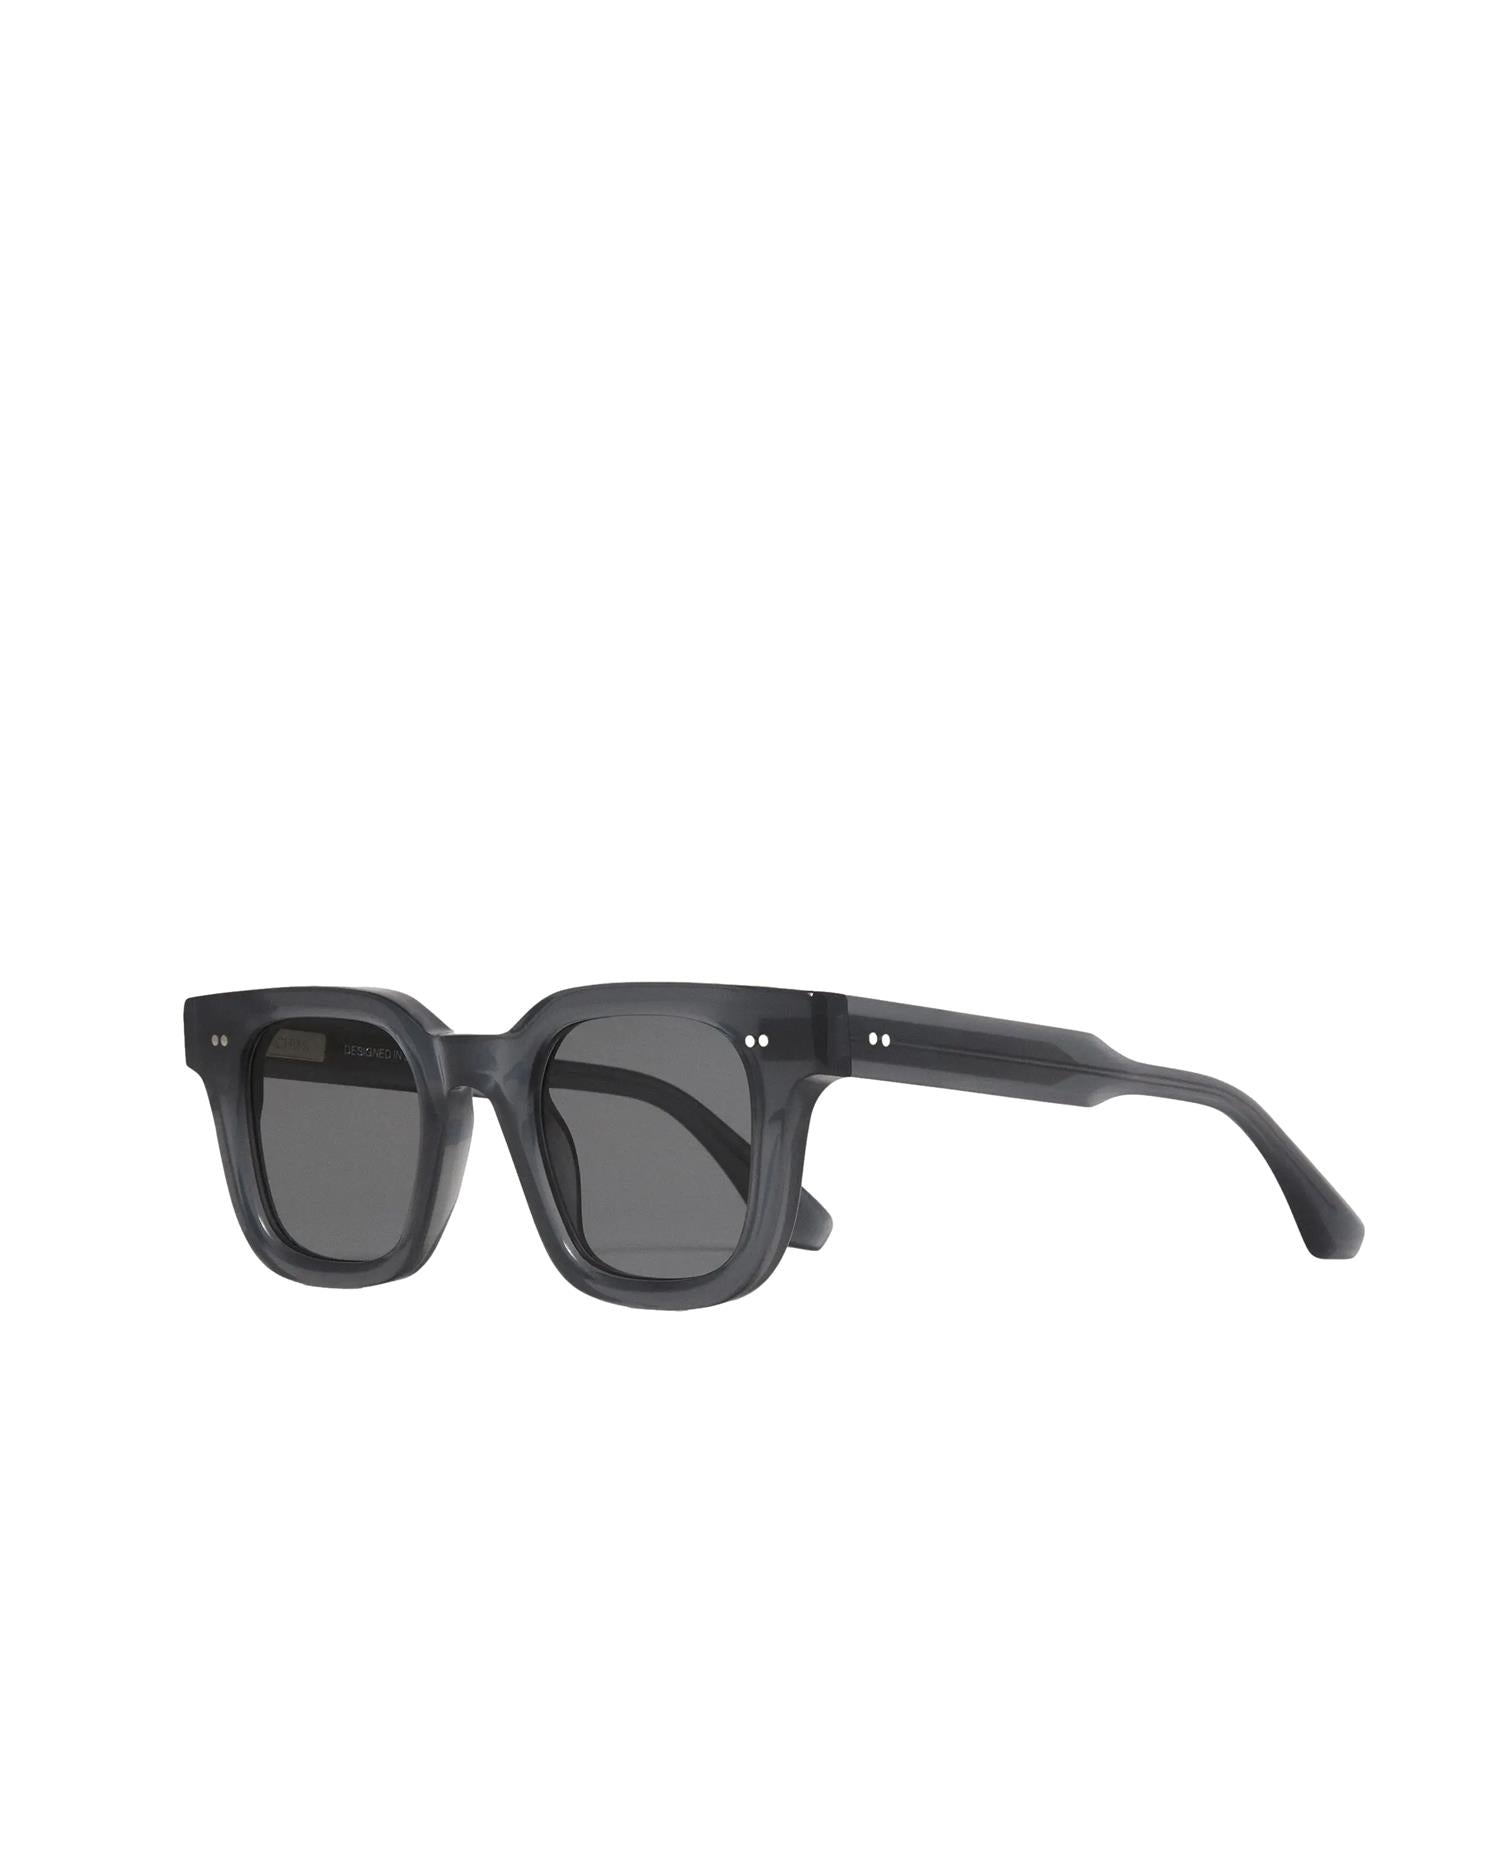 Shop Chimi Eyewear 04 Dark Grey Solbriller Mørkegrå her - Norsk, rask levering ikkebutikk.no